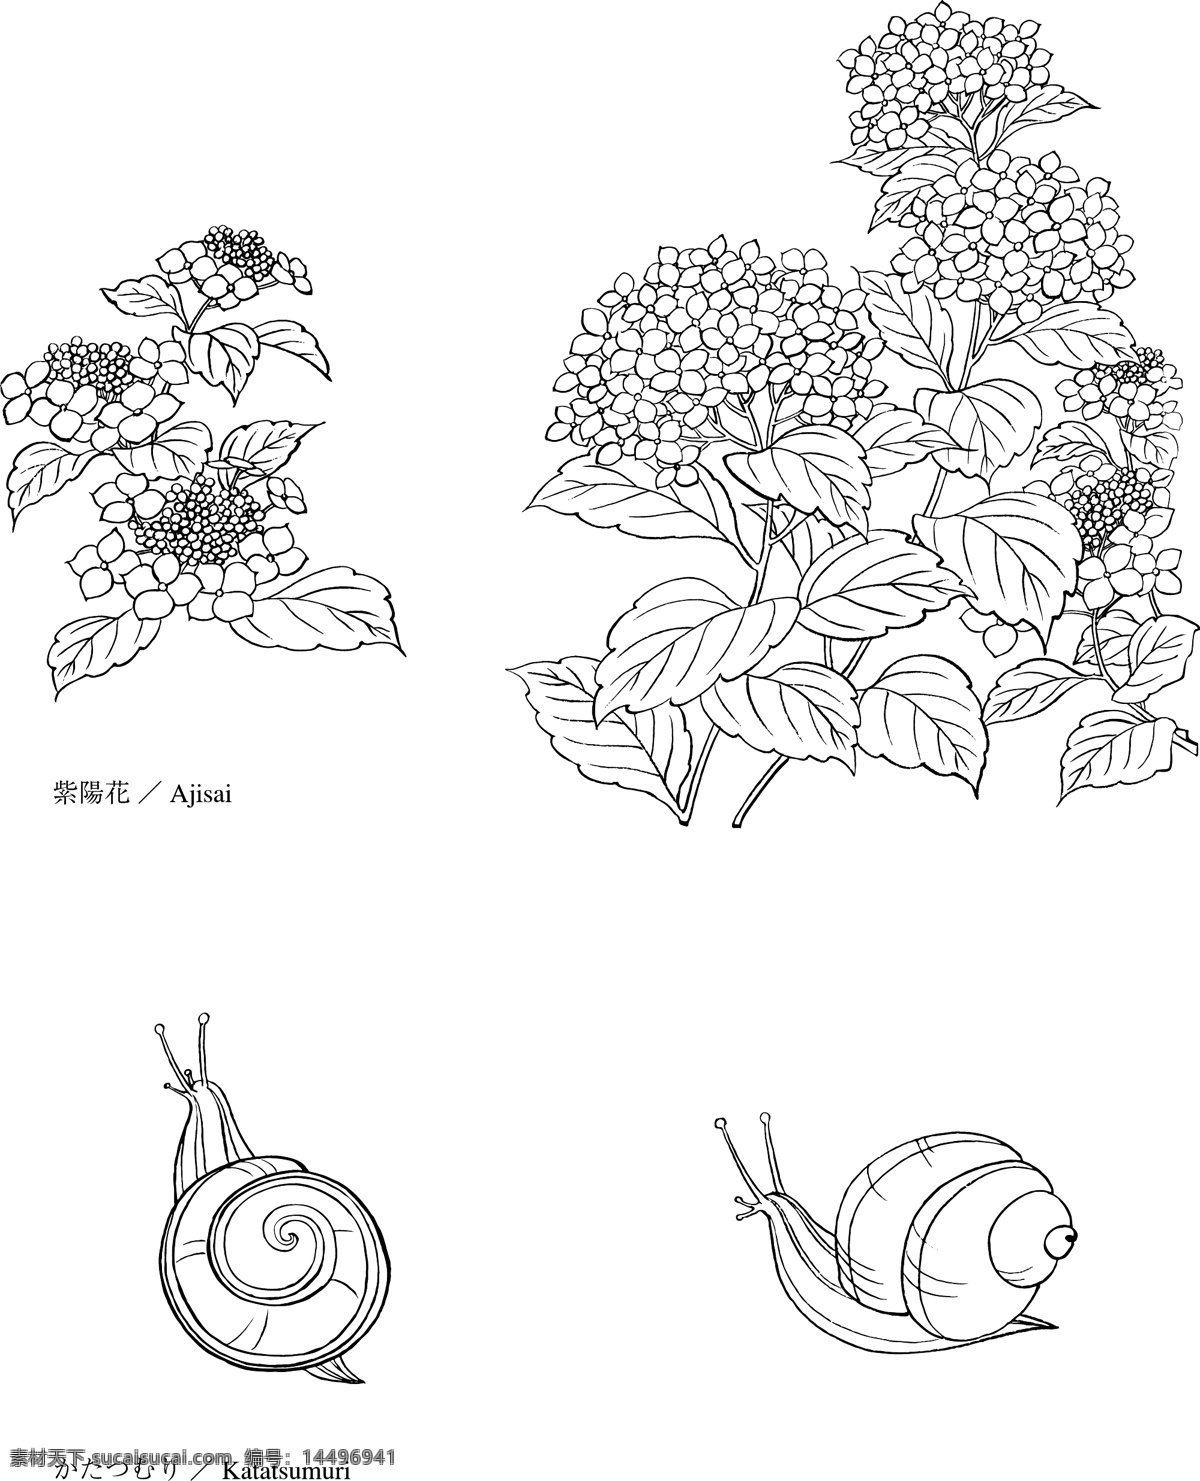 日本 矢量 花草 动物 创意 矢量格式 矢量素材 矢量图形素材